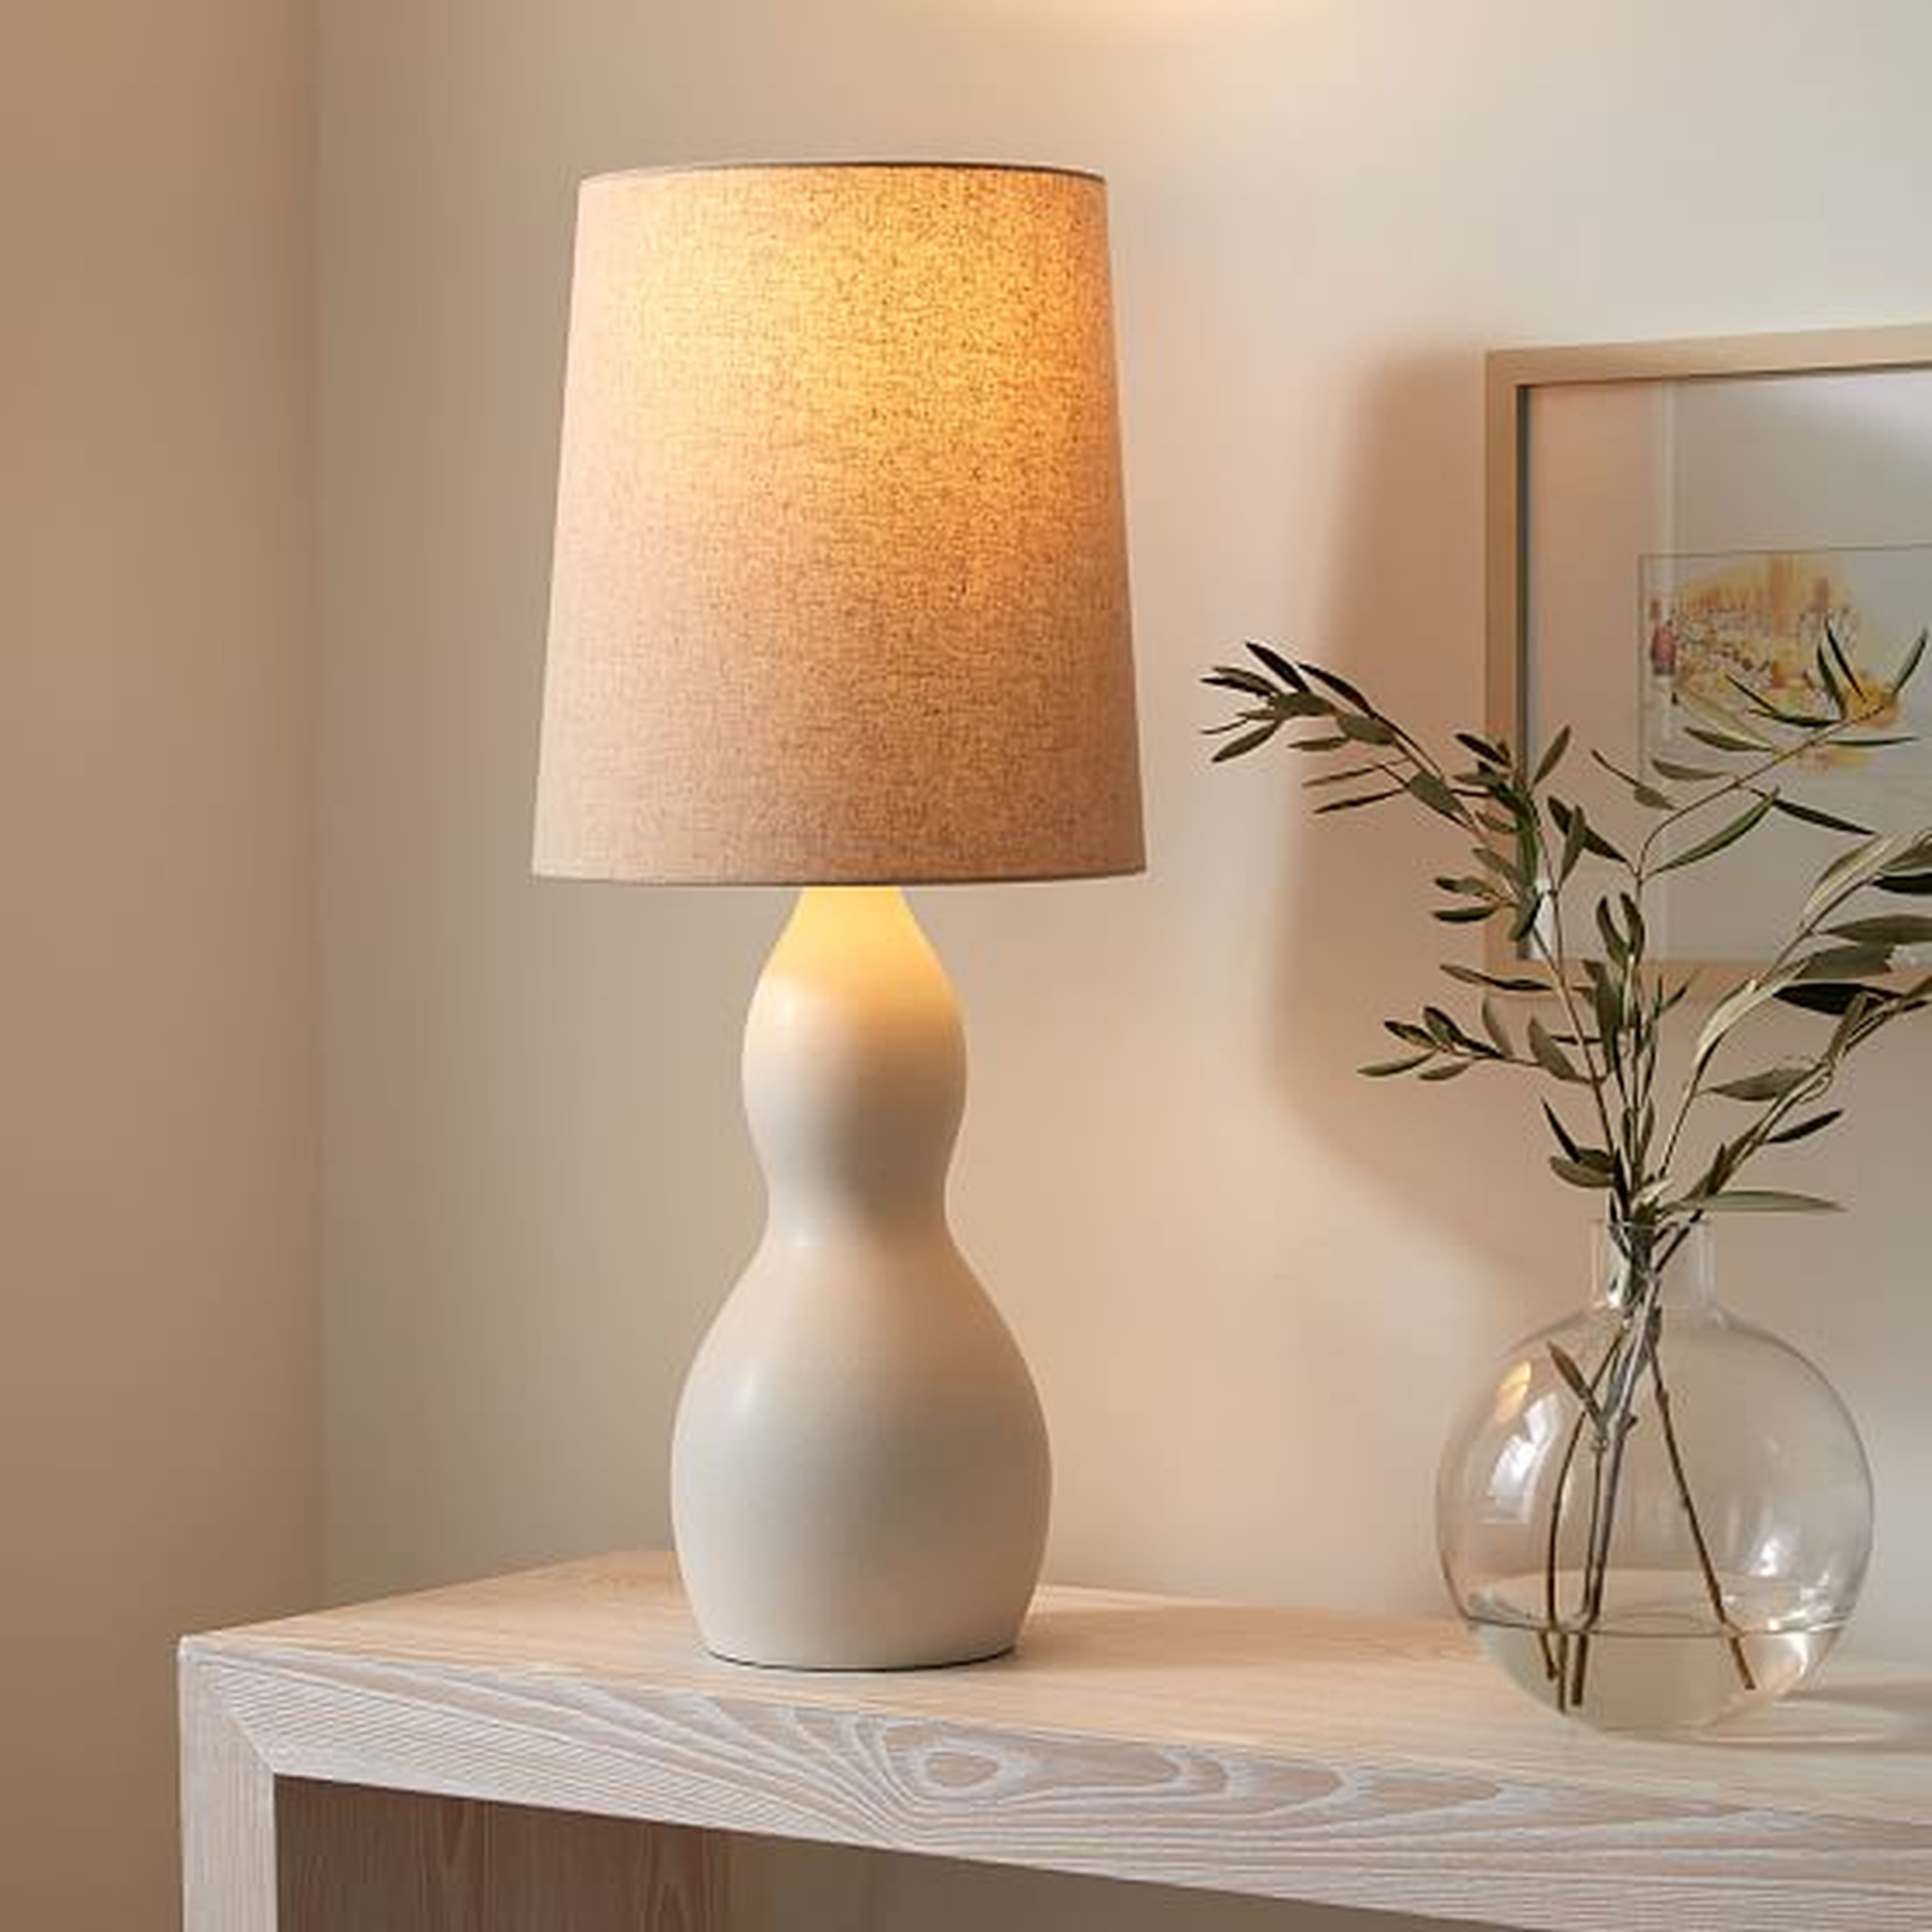 Modern Gourd Table Lamp, 29.5", White & Natural Linen - West Elm